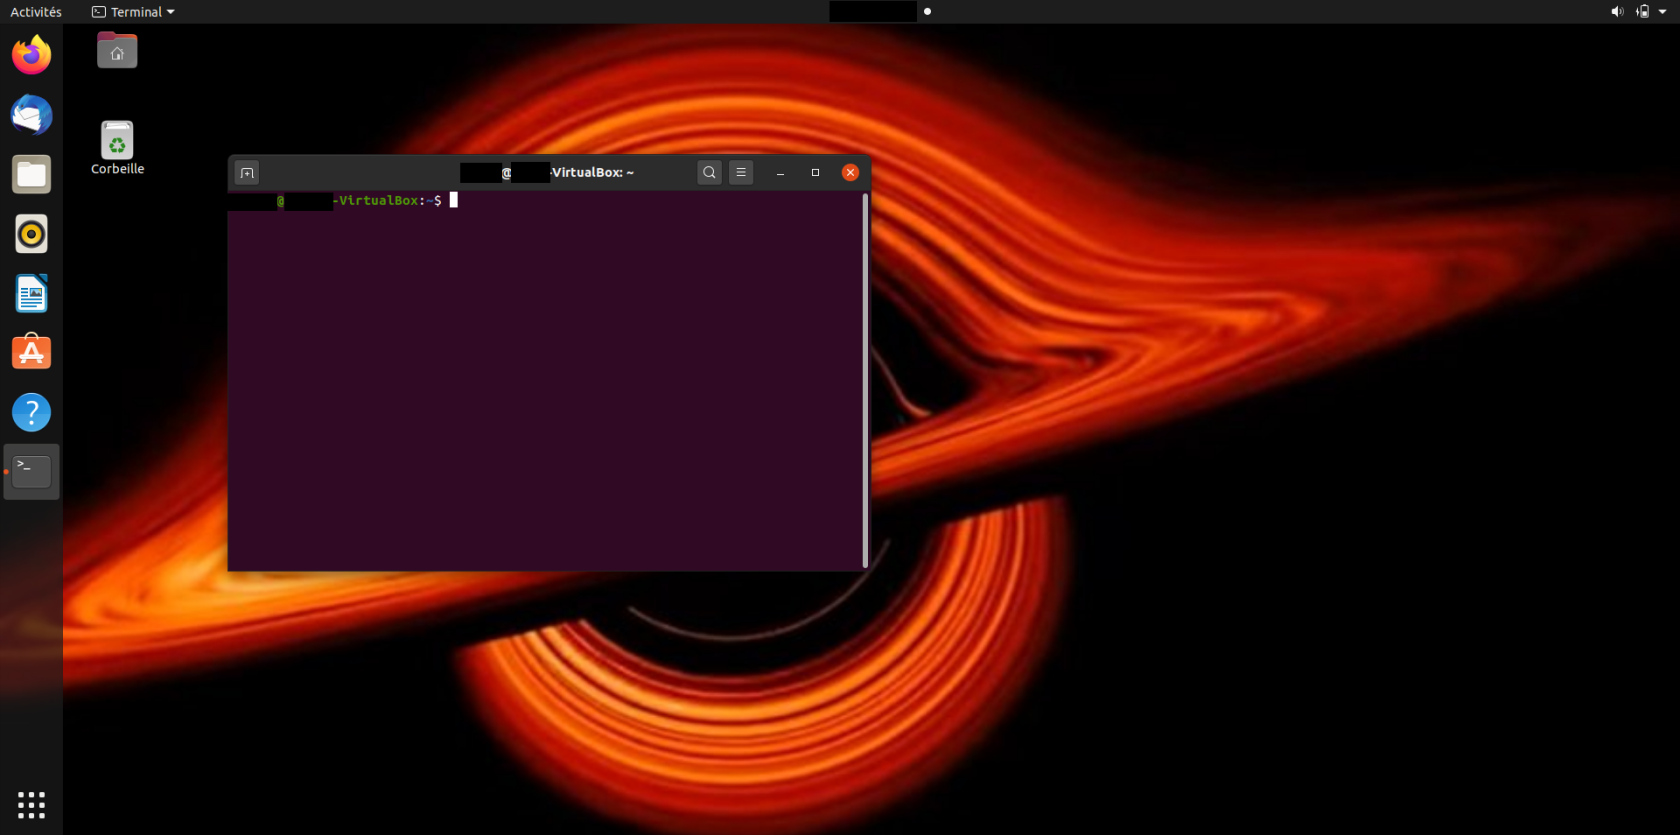 tutos_cmd_ubuntu-3-terminal-open.png